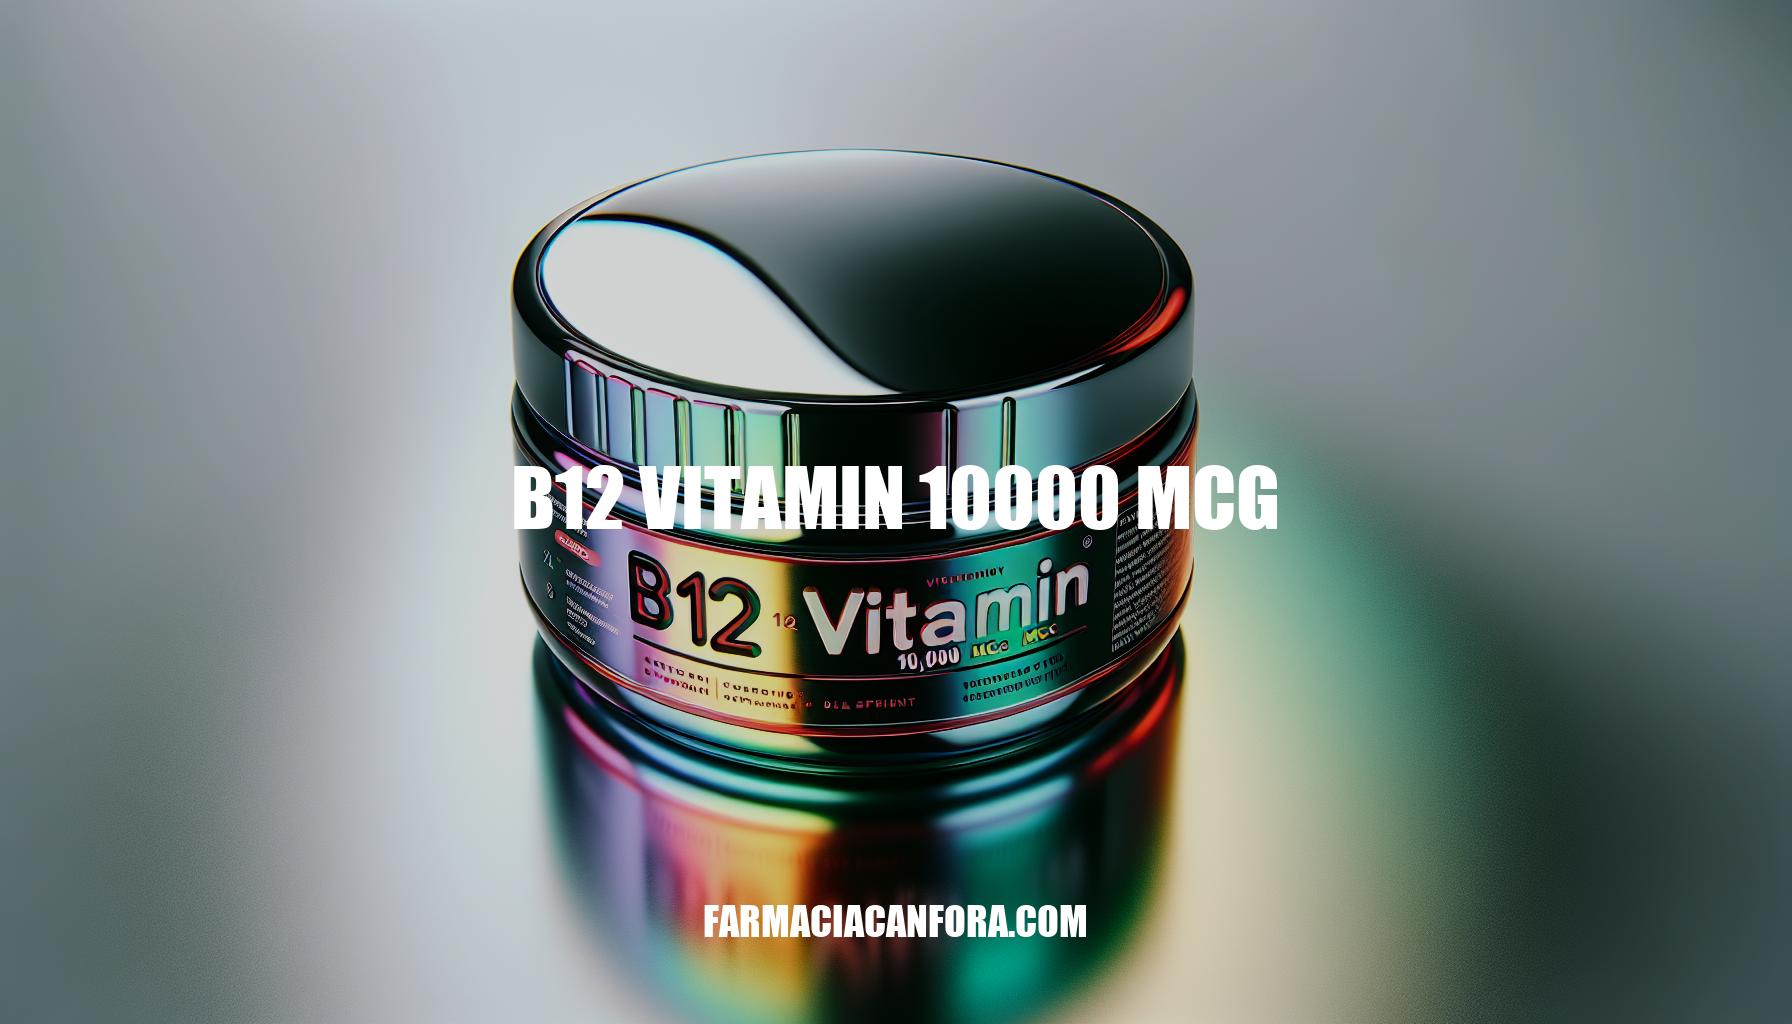 B12 Vitamin 10,000 mcg: Benefits, Dosage, and Reviews